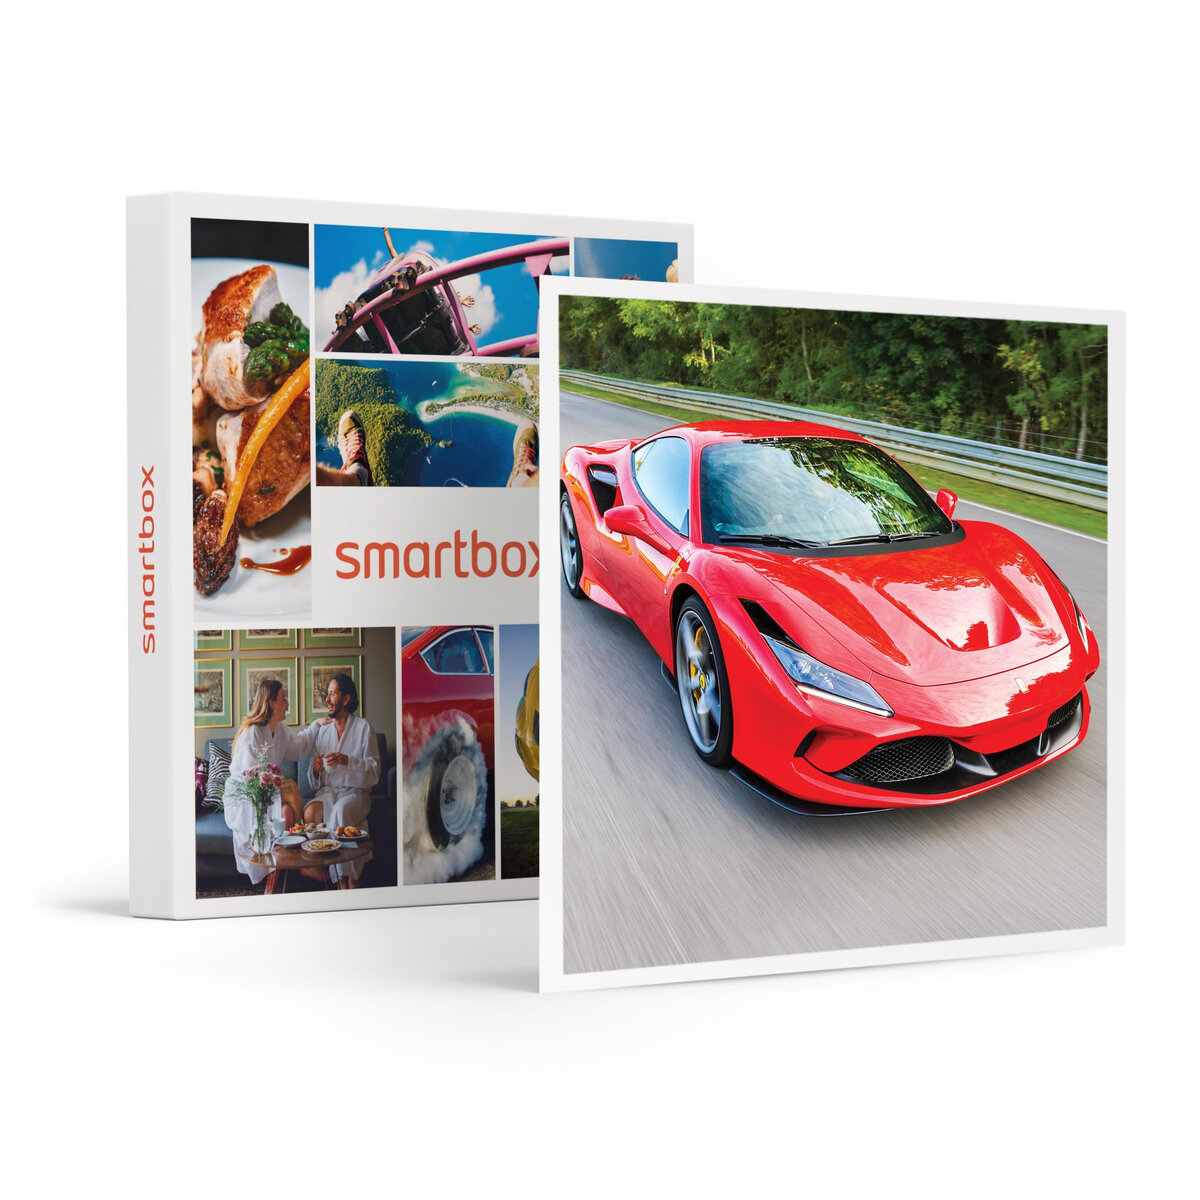 SMARTBOX - Coffret Cadeau Passion pilotage : 1 stage de conduite